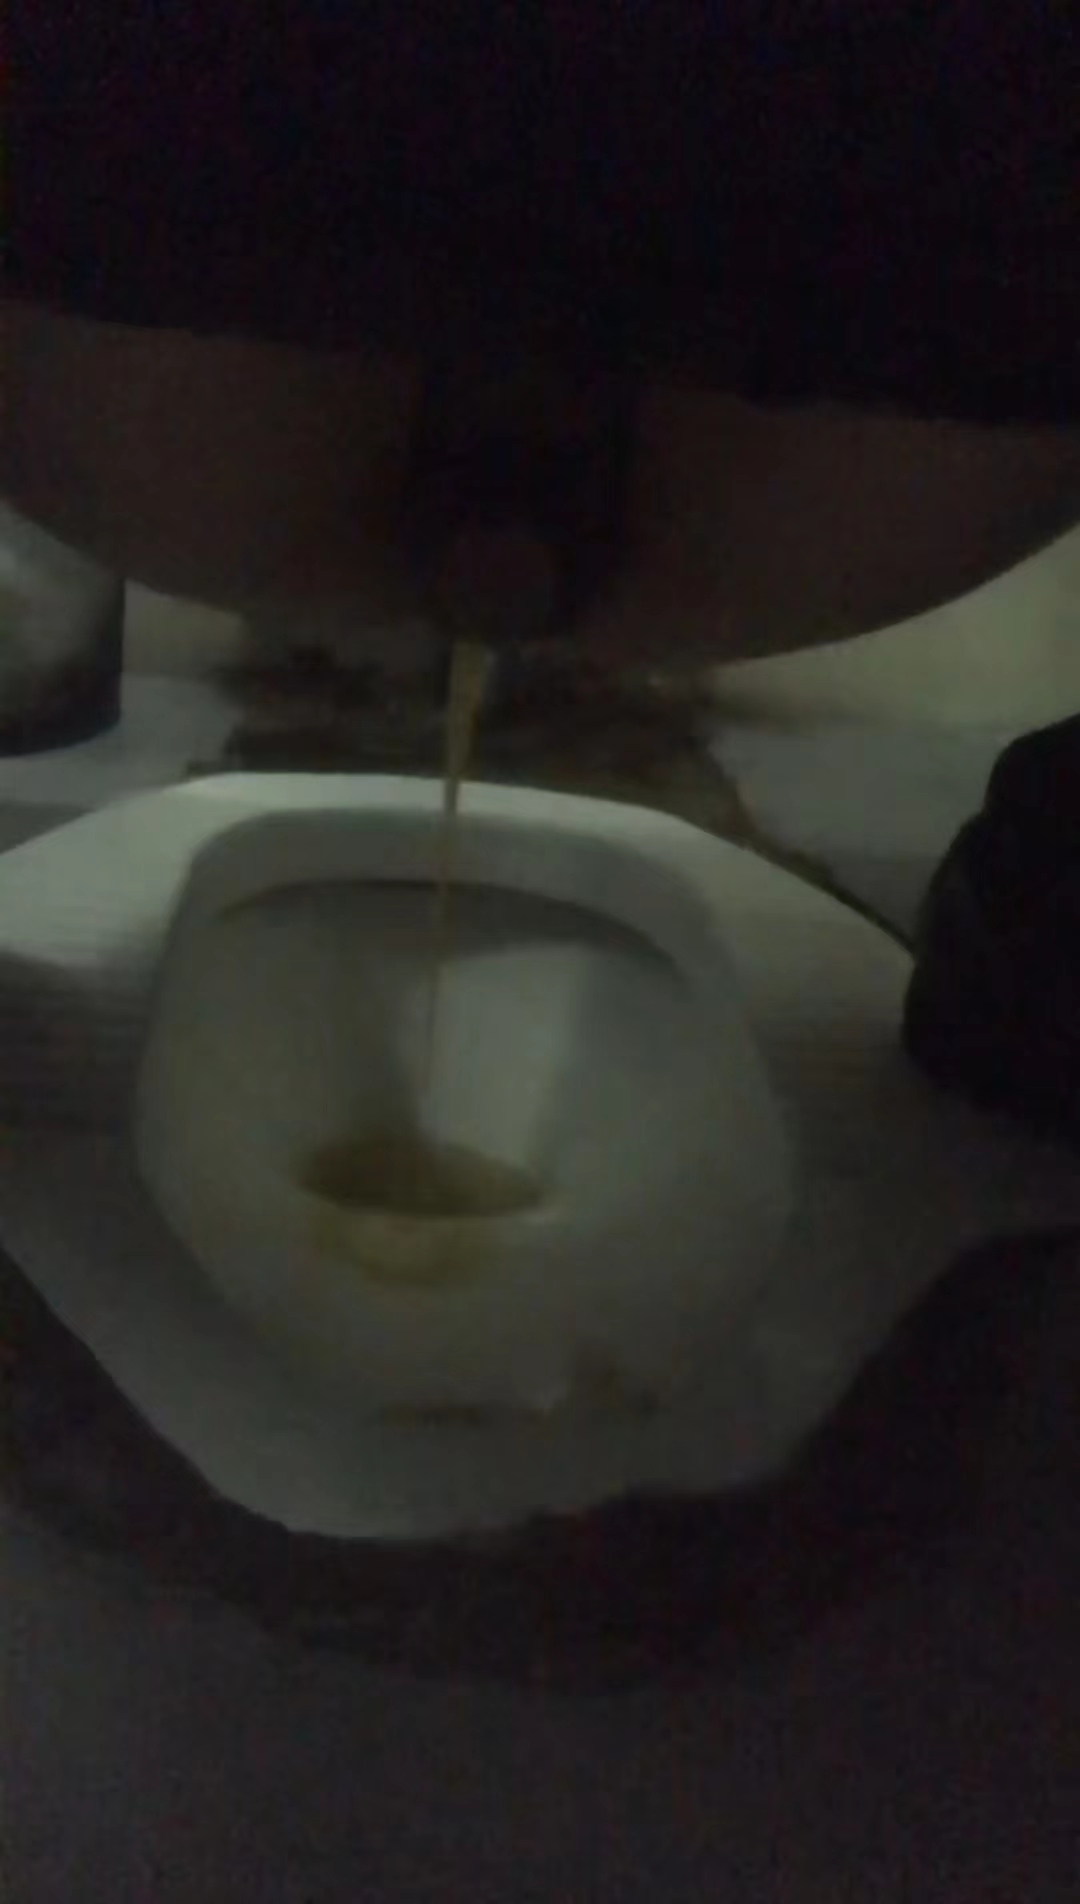 Diarrhea urgent public toilet explotion